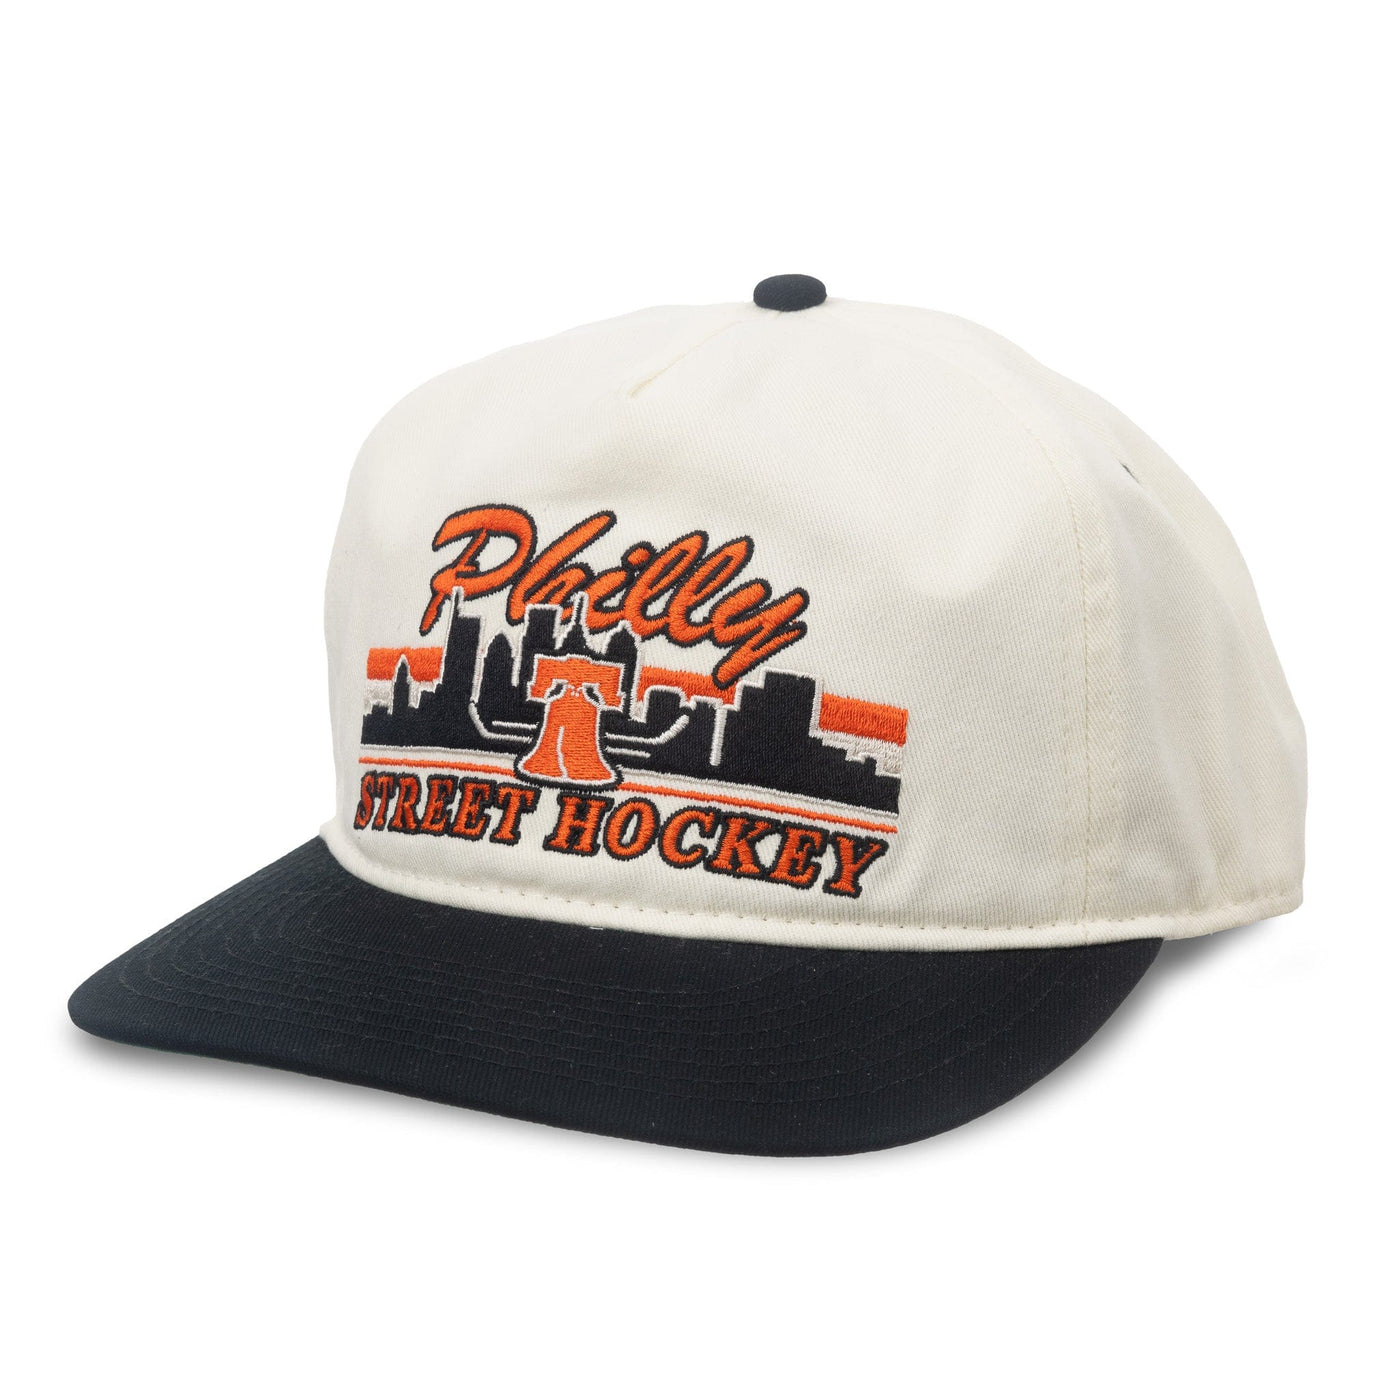 Celly Hockey Philly Street Hockey Snapback Hat - Cream - TheHockeyShop.com